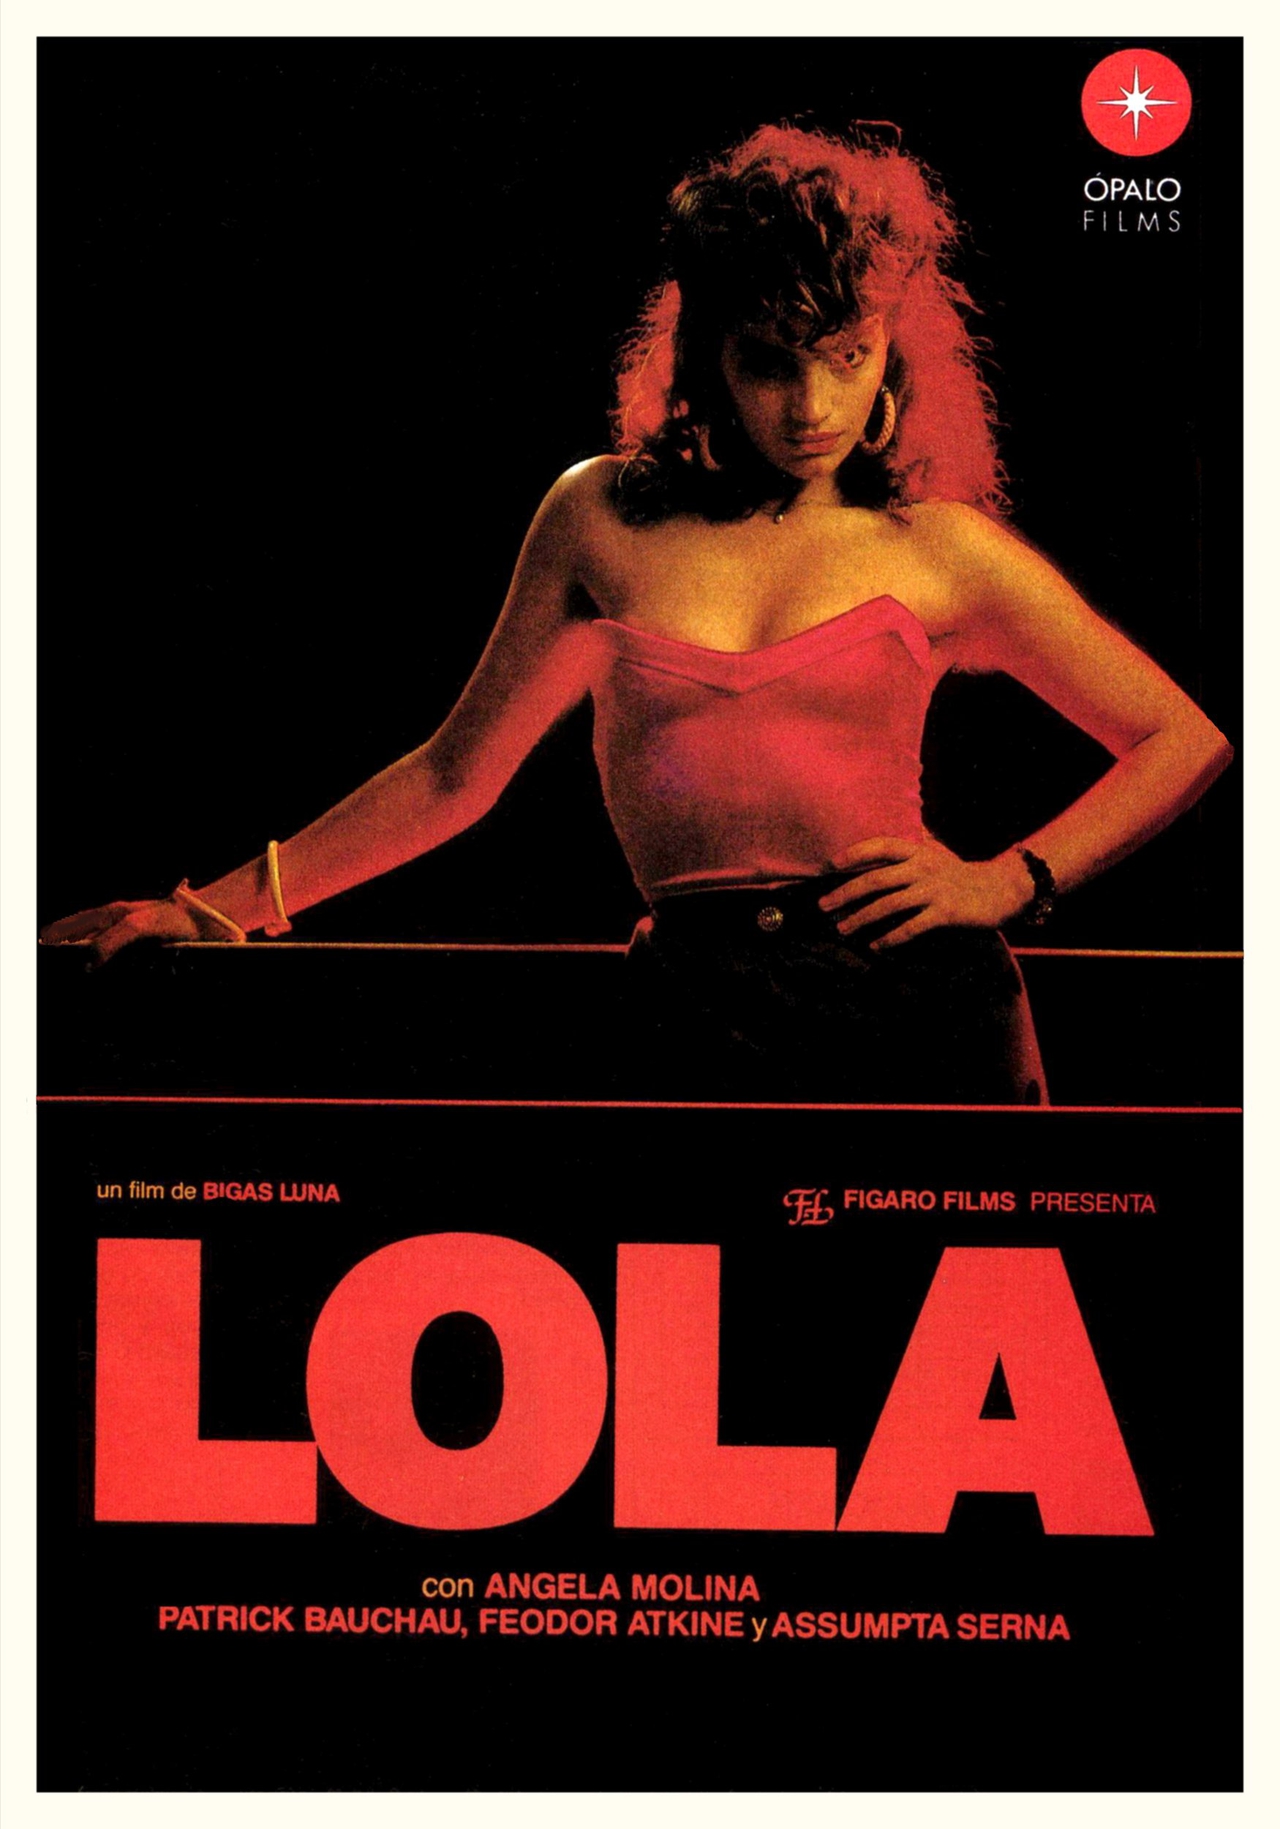  فیلم سینمایی Lola با حضور Ángela Molina